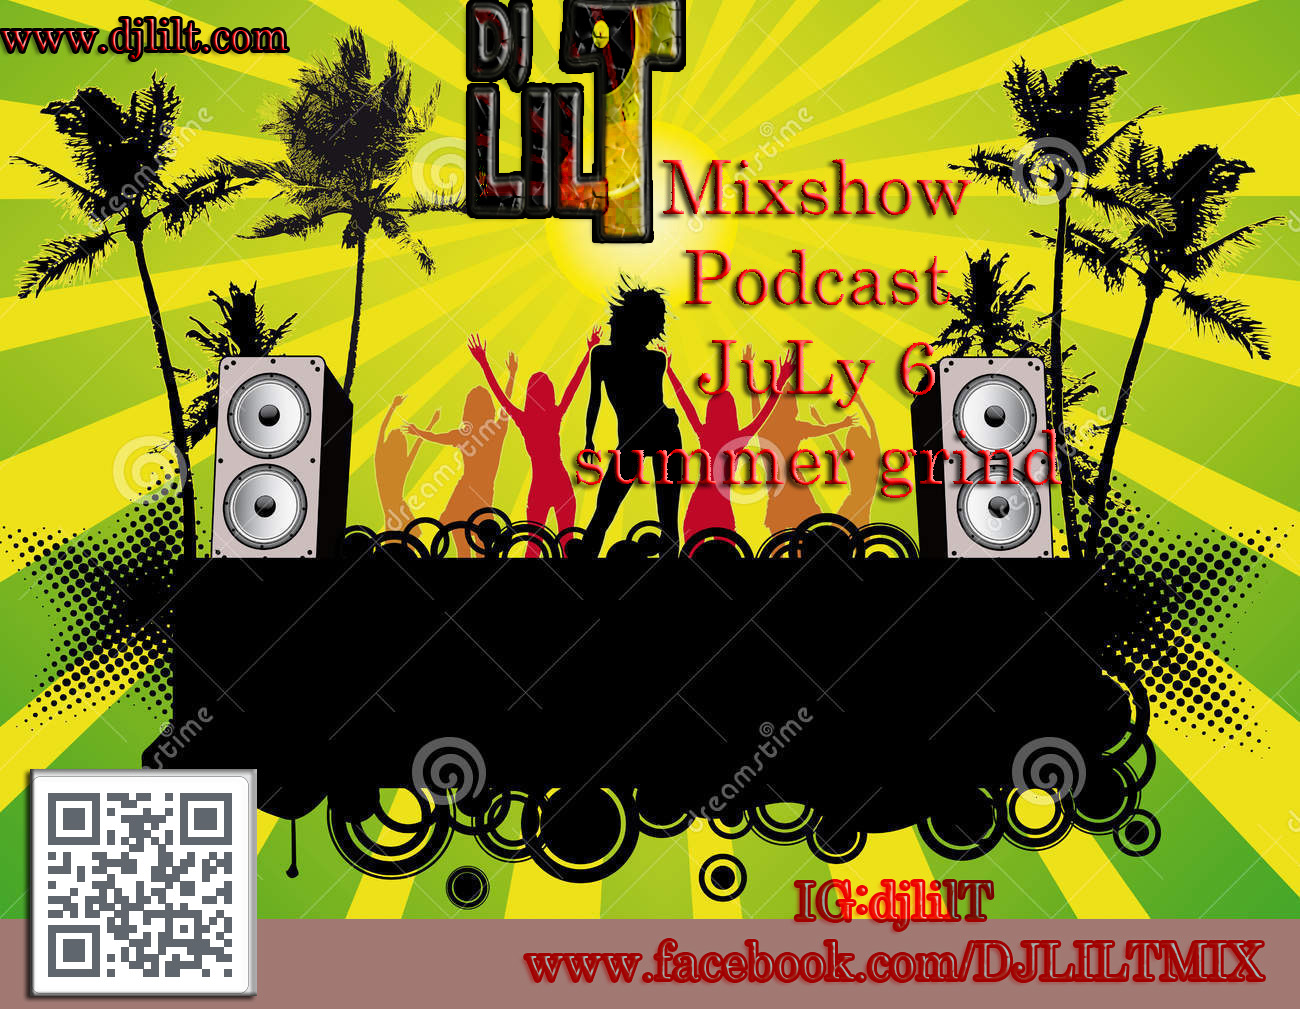 DJ Lil T MIxshow July 6 Summer grind